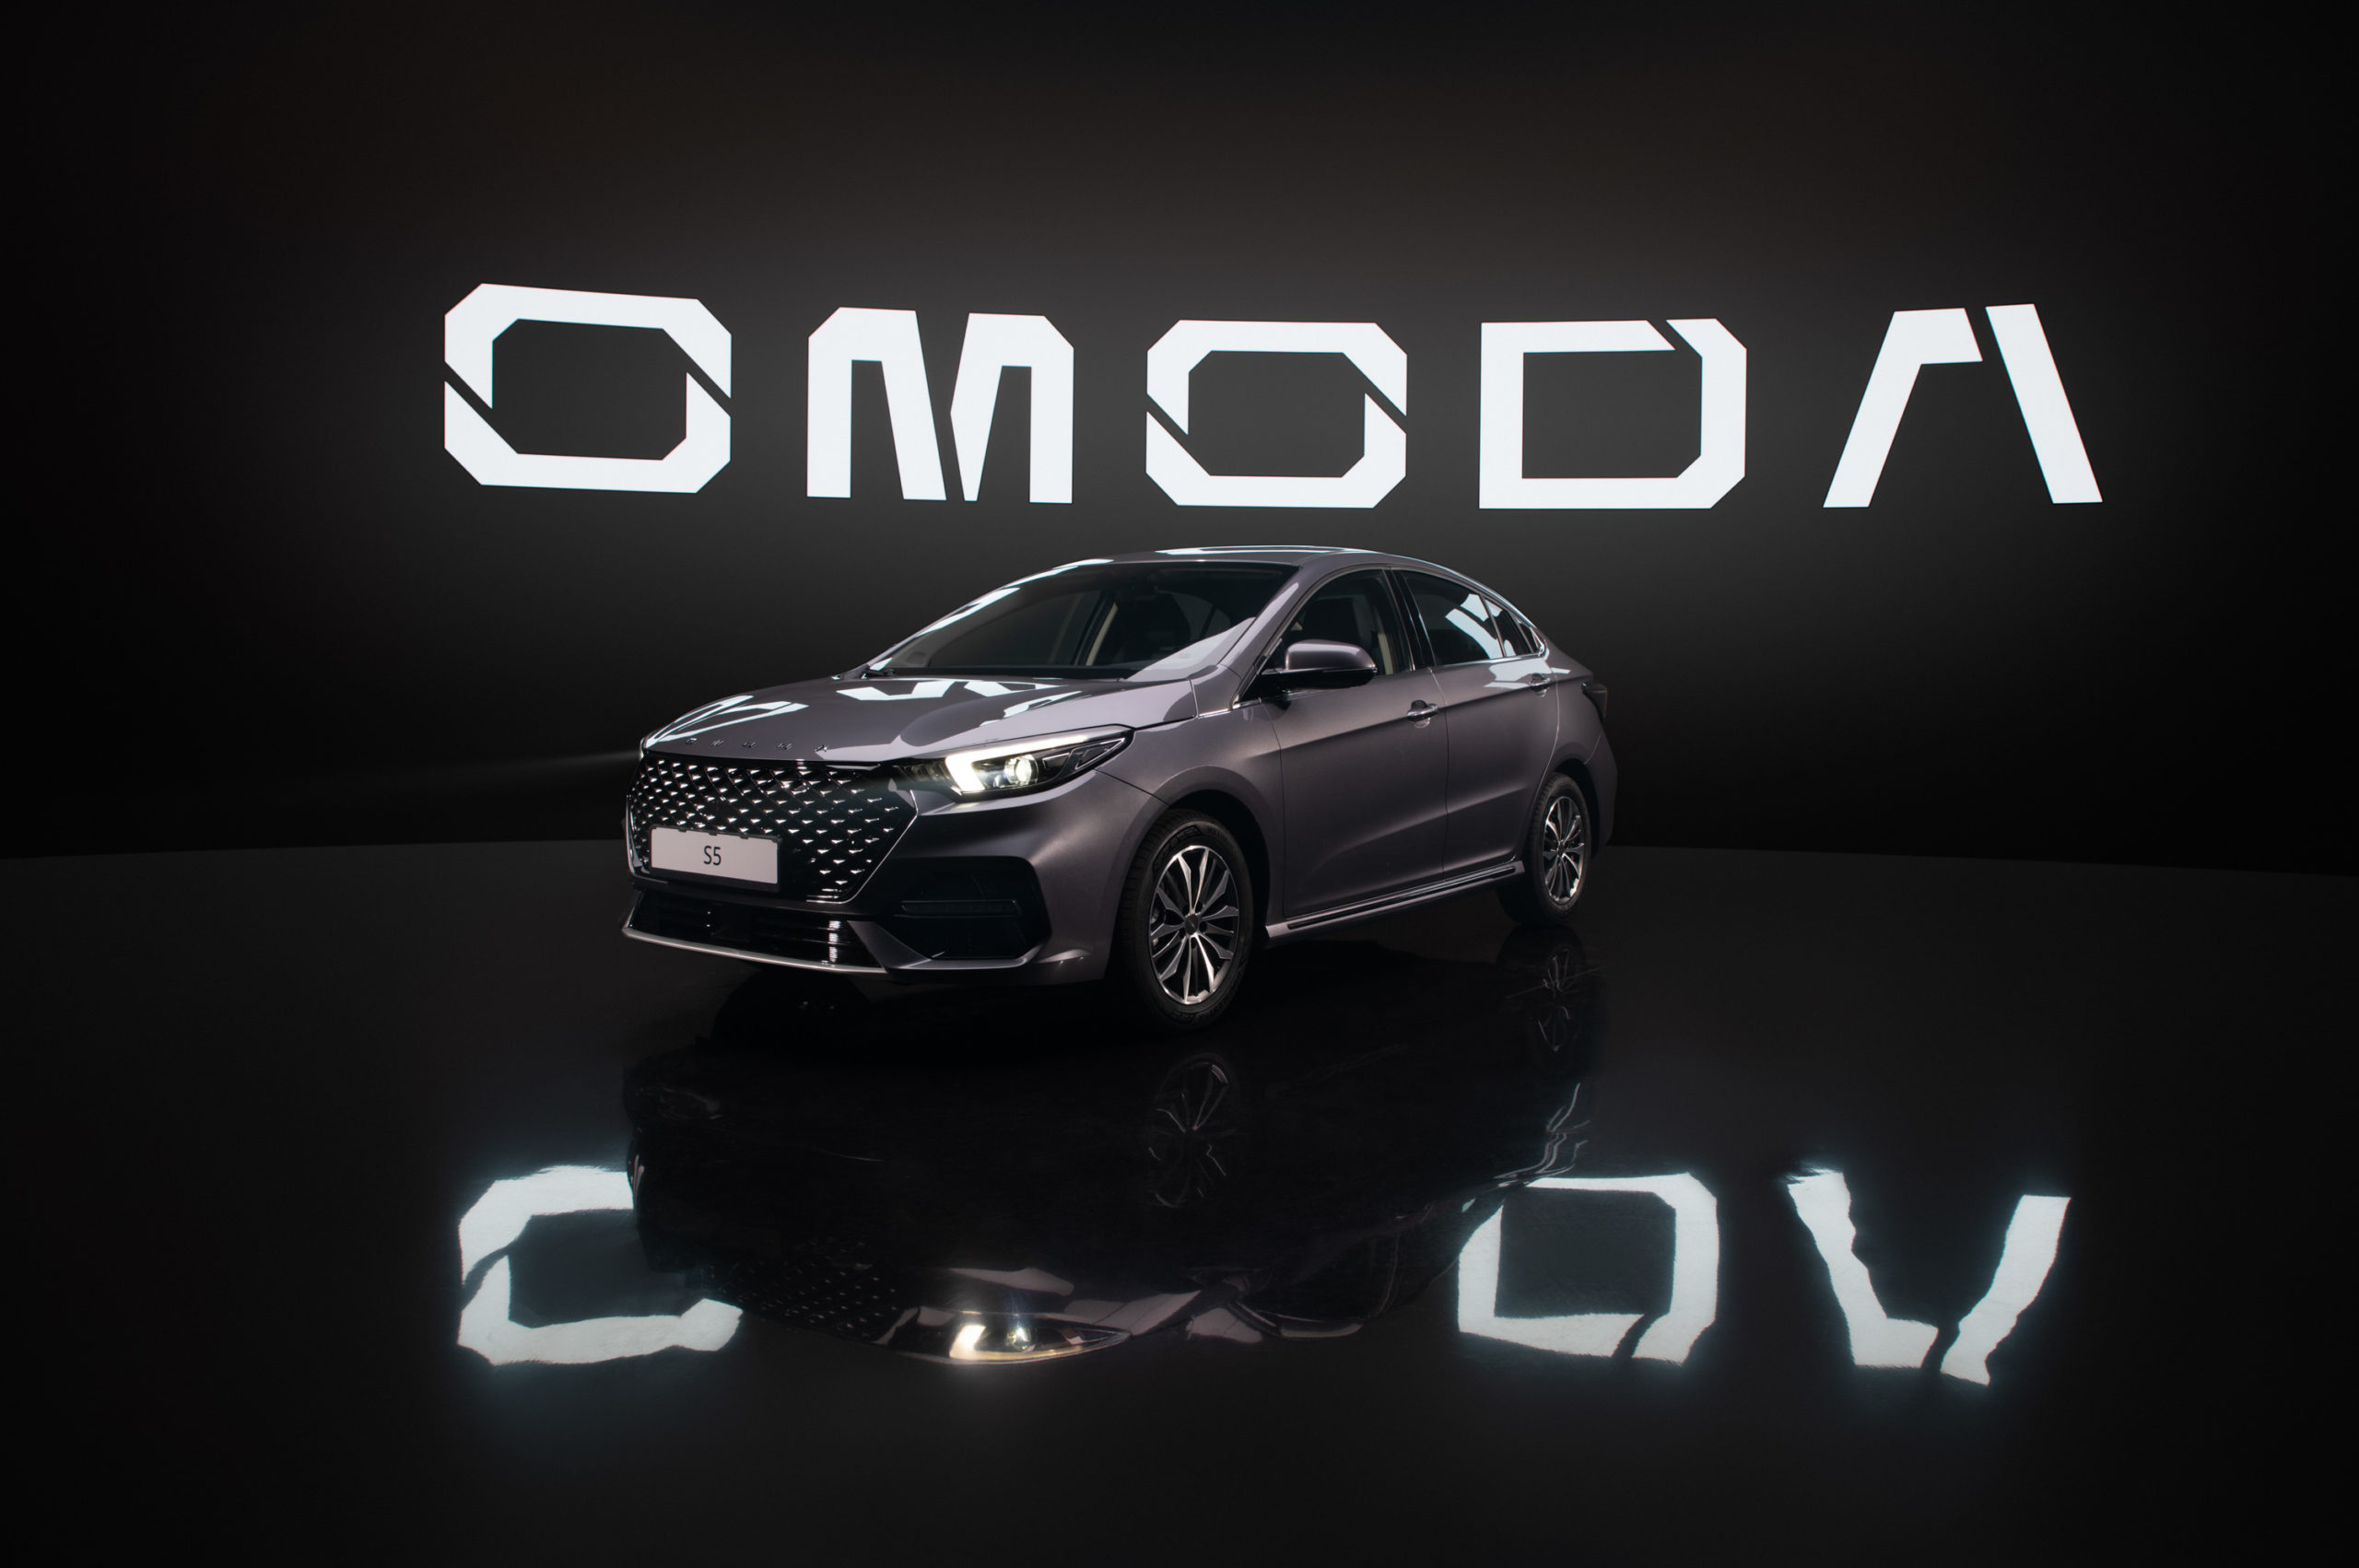 Cедан OMODA S5 скоро поступит в продажу в версии GT